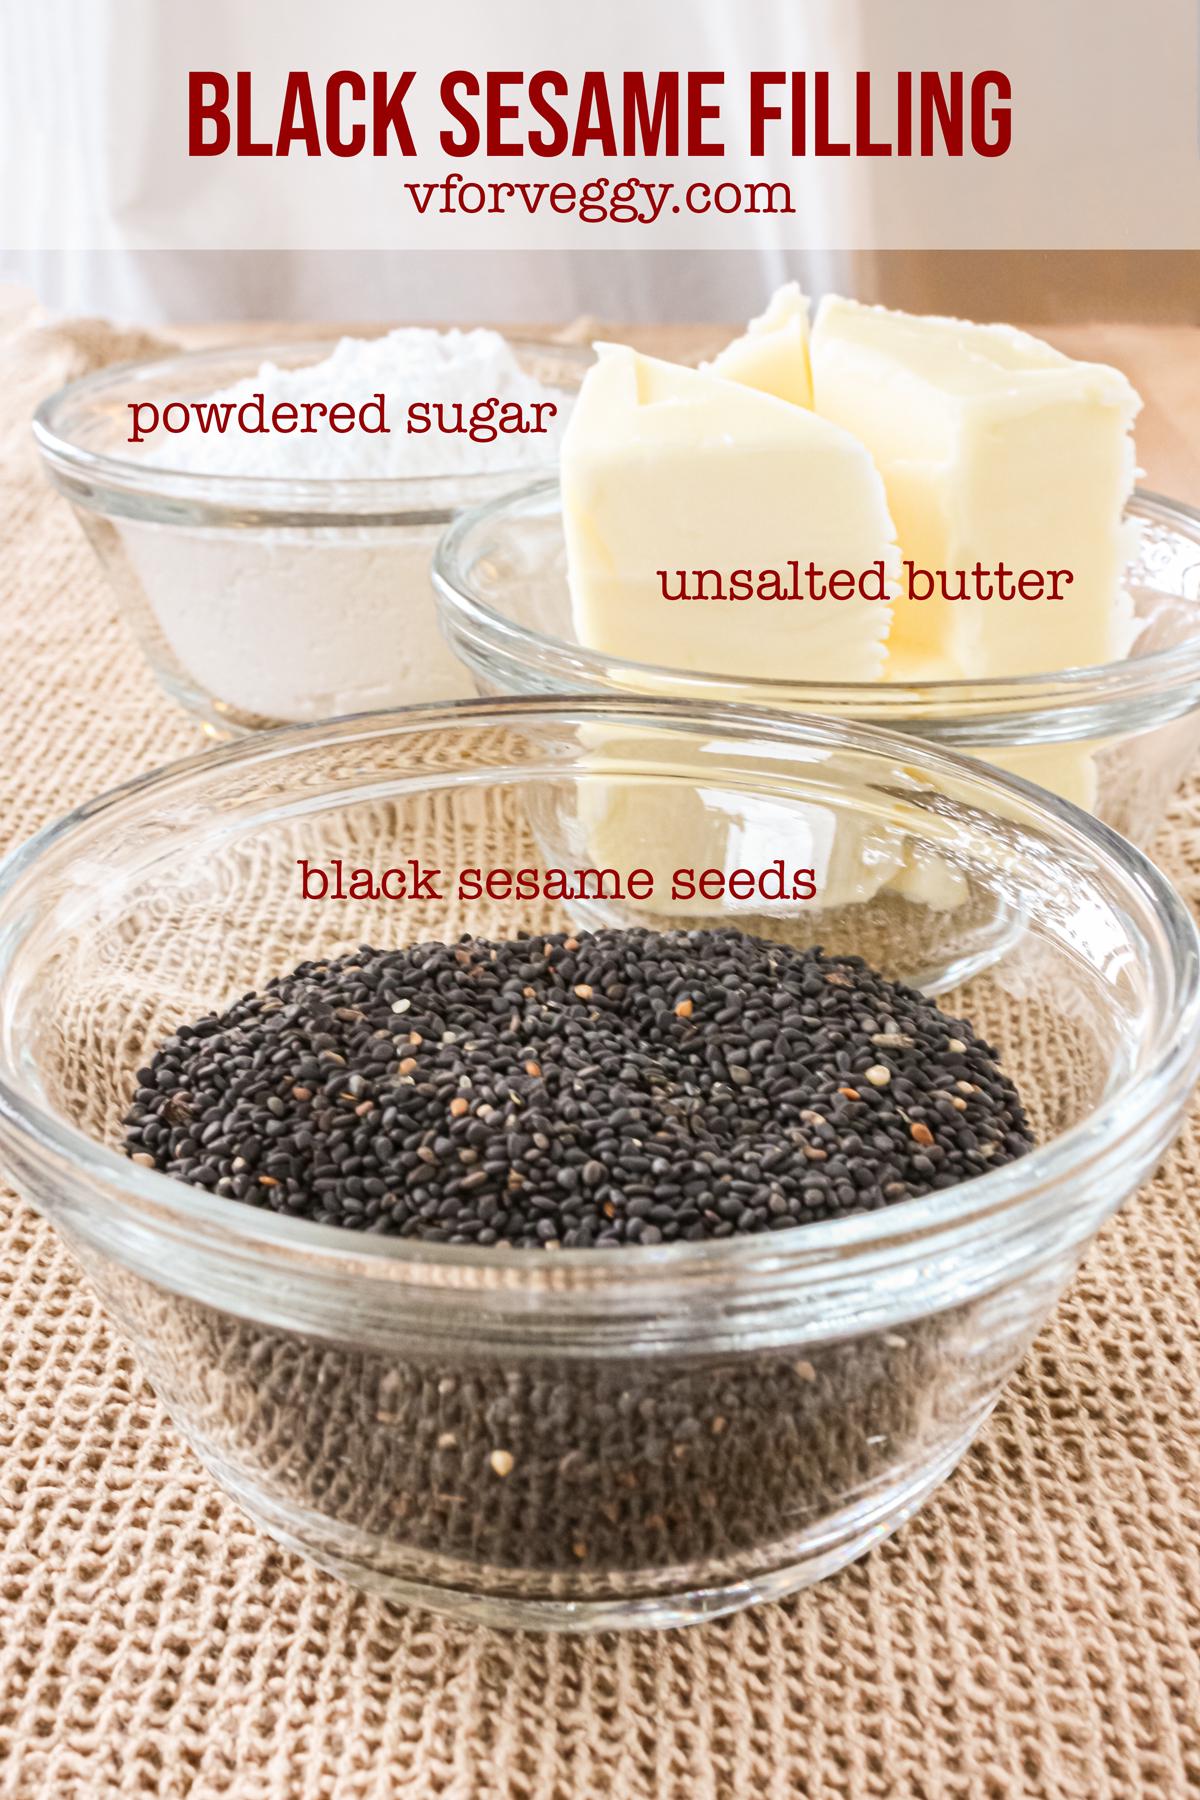 Black sesame filling: black sesame seeds, unsalted butter, and powdered sugar.